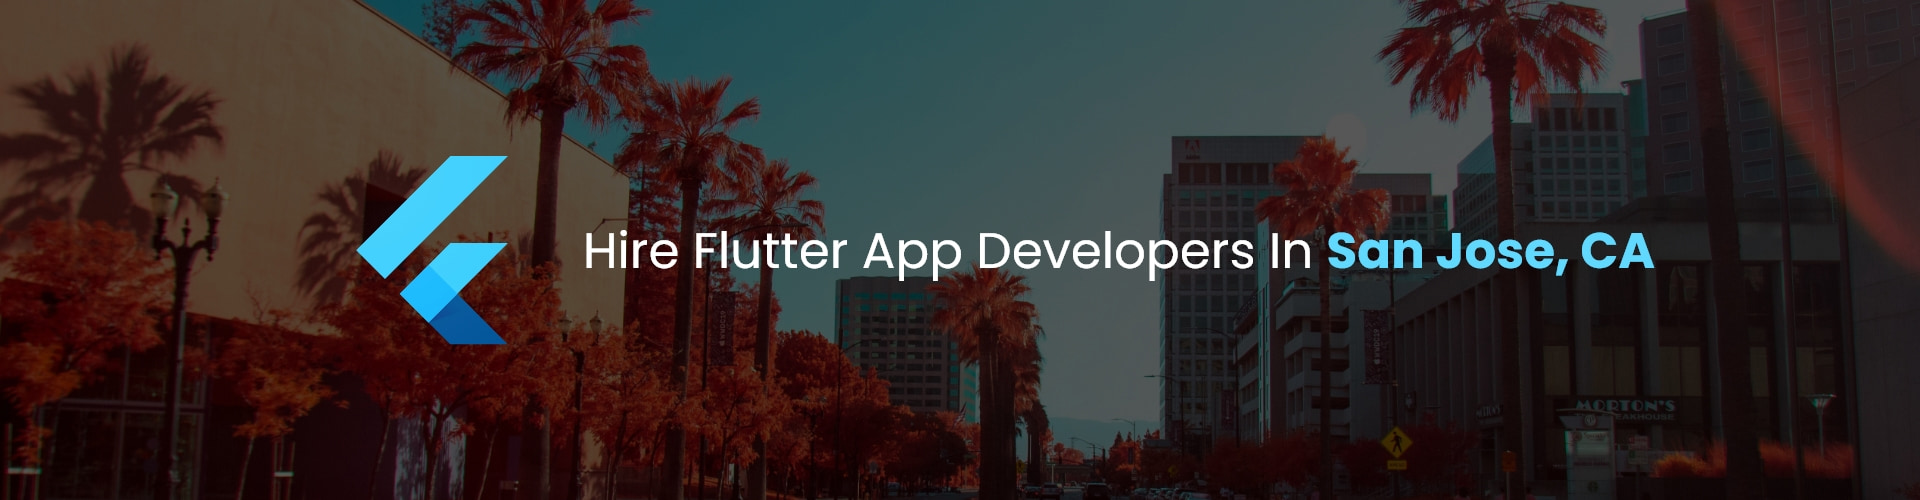 flutter app developers in san jose